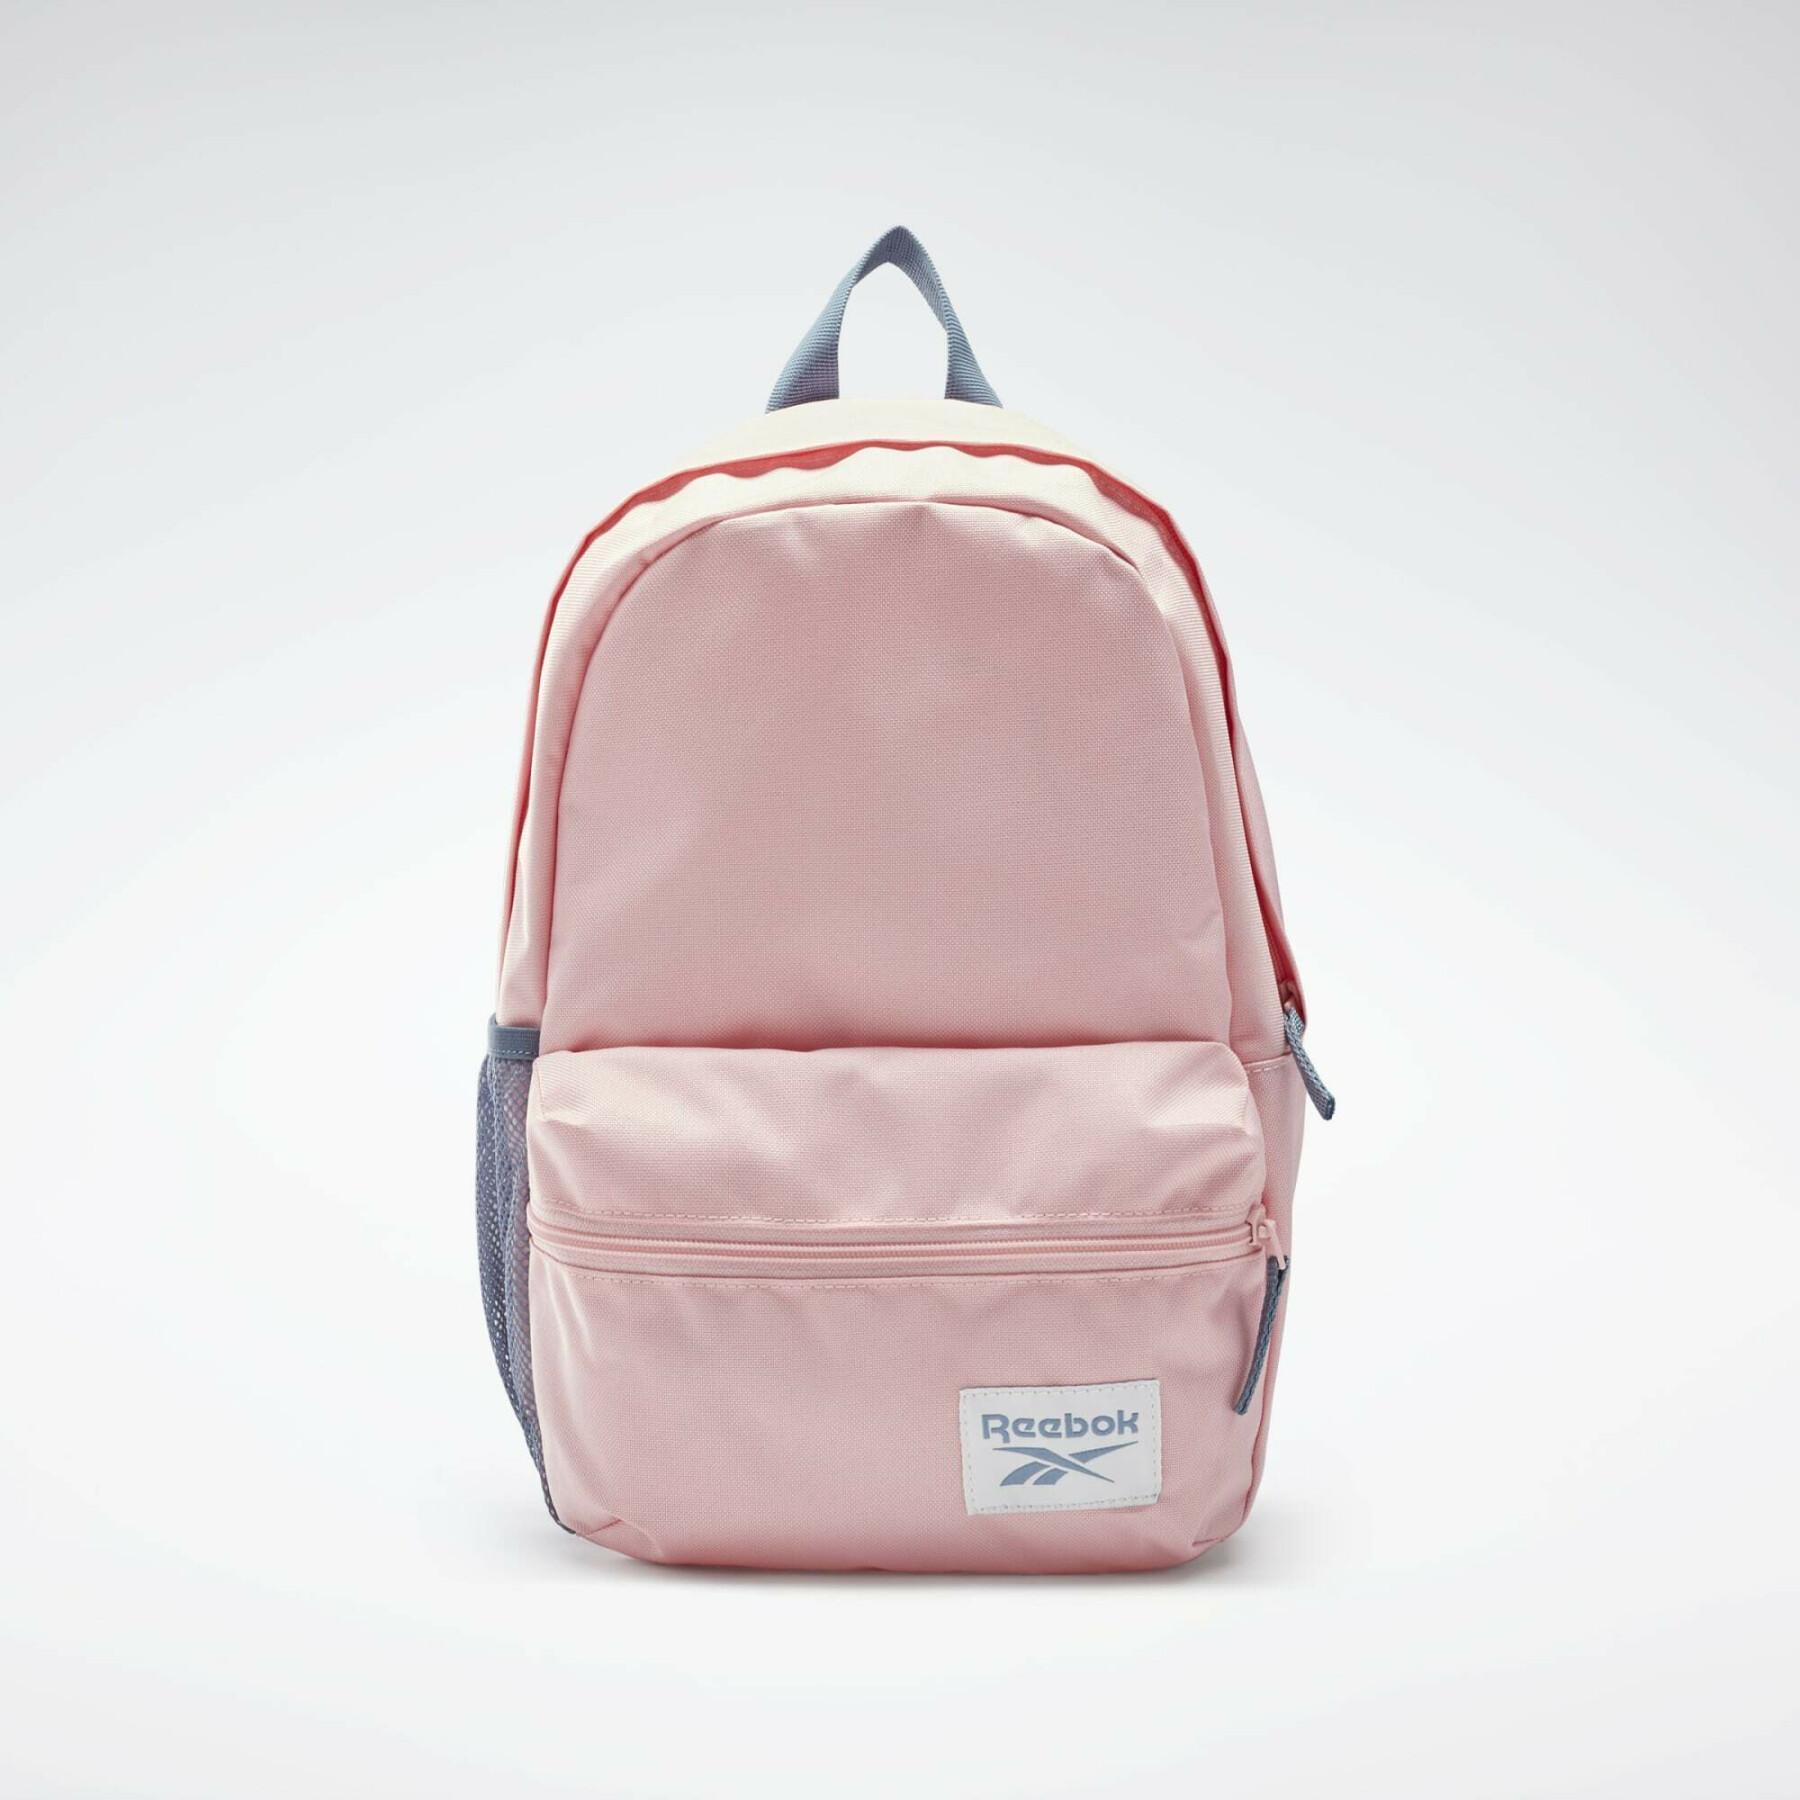 Children's backpack Reebok et trousse